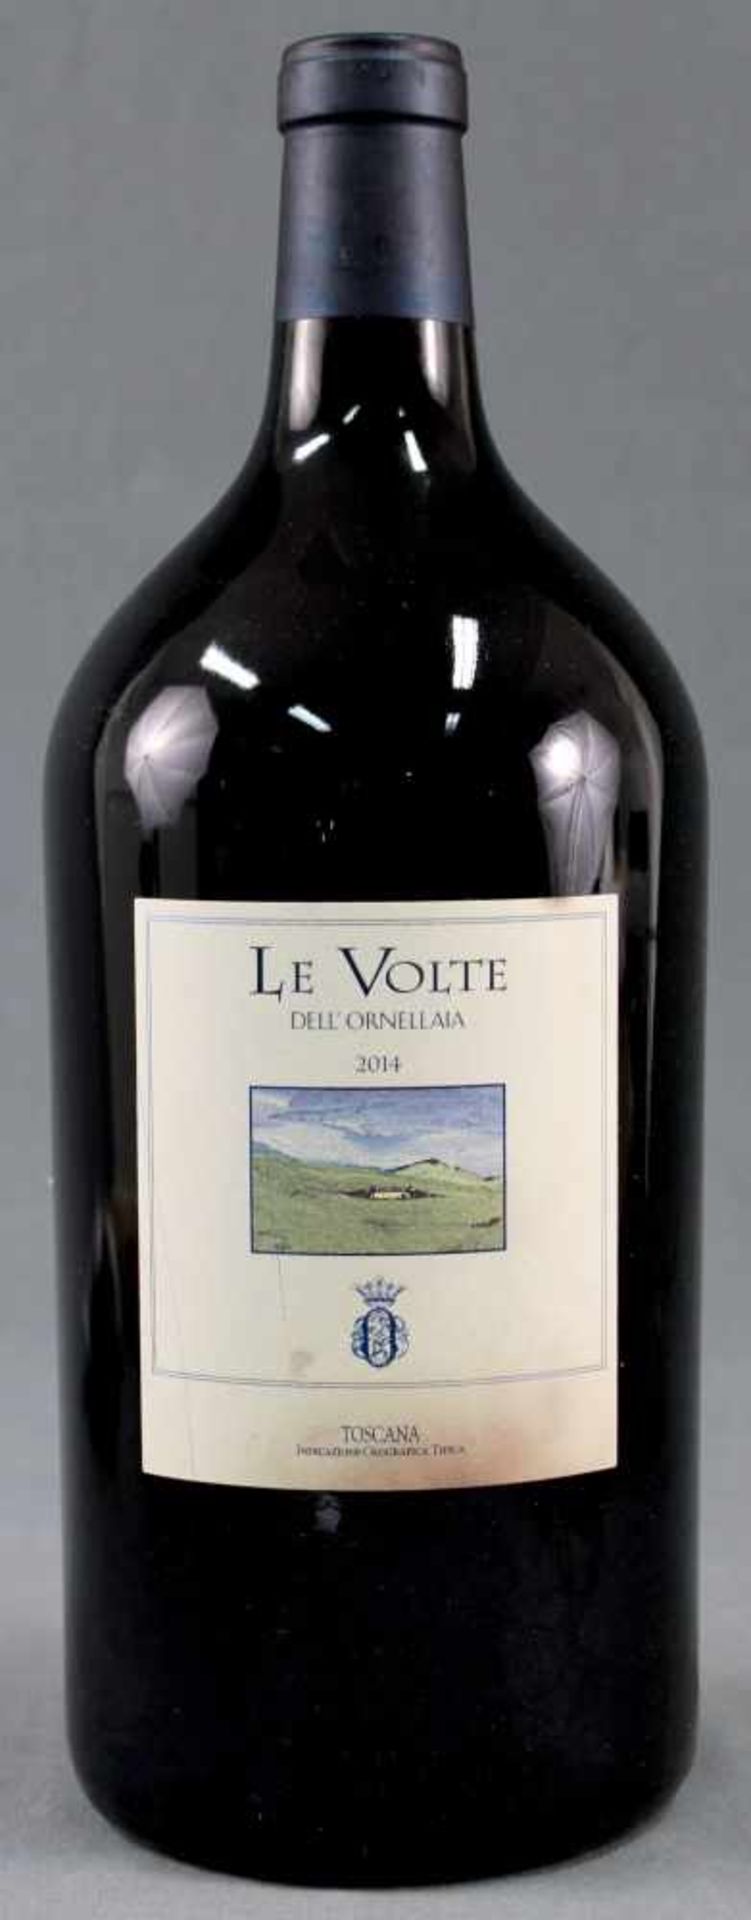 2014 Le Volte Dell' Ornellaia. Toscana IGT. Doppelmagnum.Eine Flasche Doppelmagnum 3 Liter, 13,5%